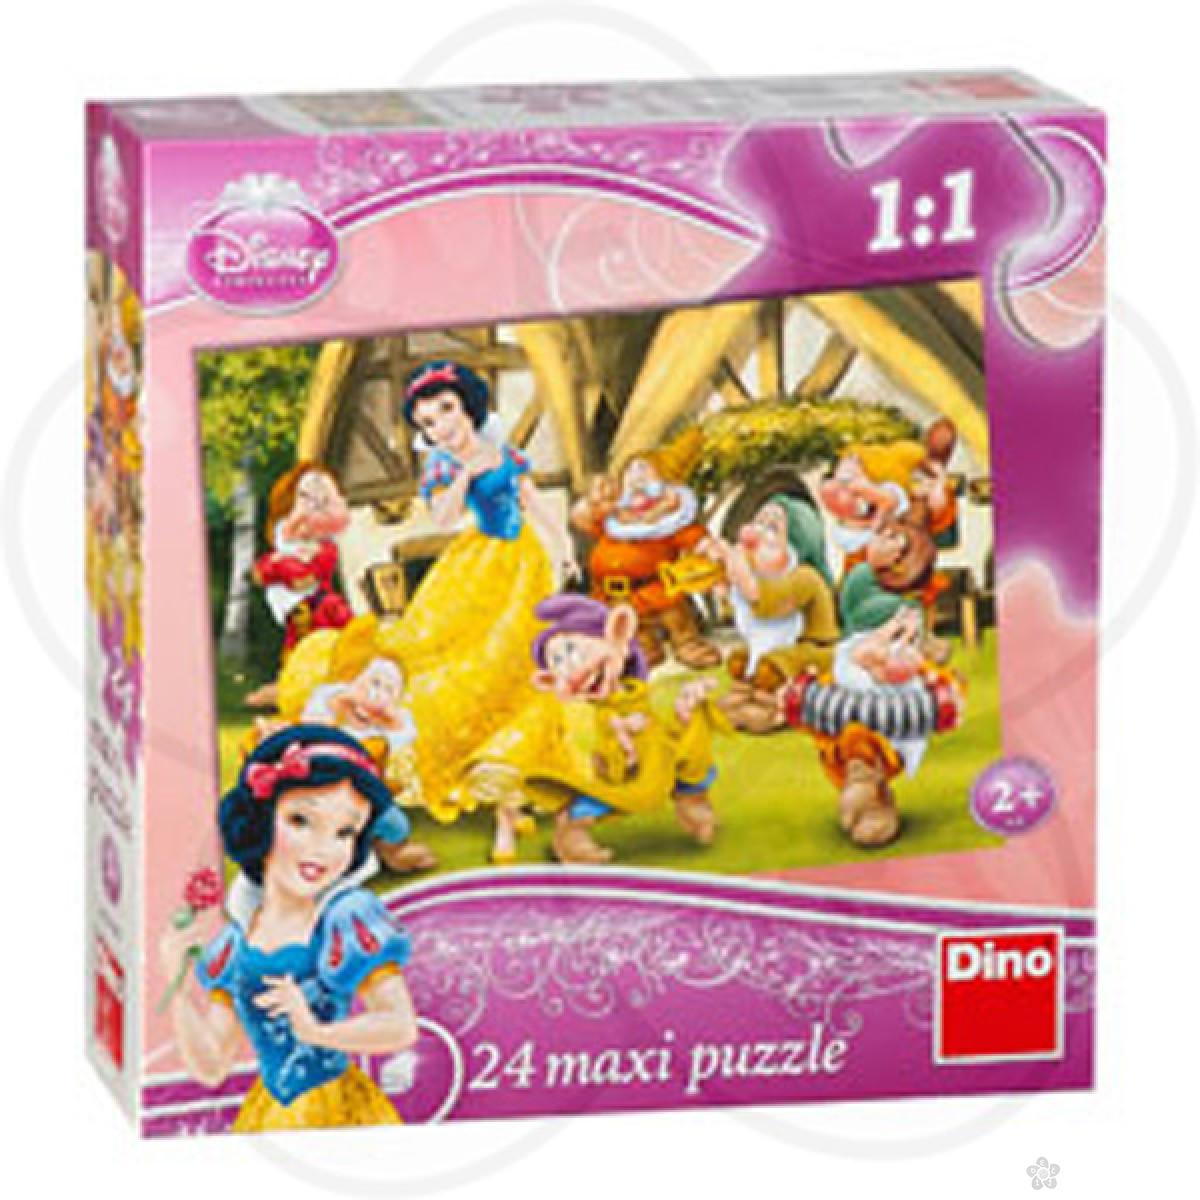 Puzzle za decu Disney Princess 24 maxi puzzle, D350083 